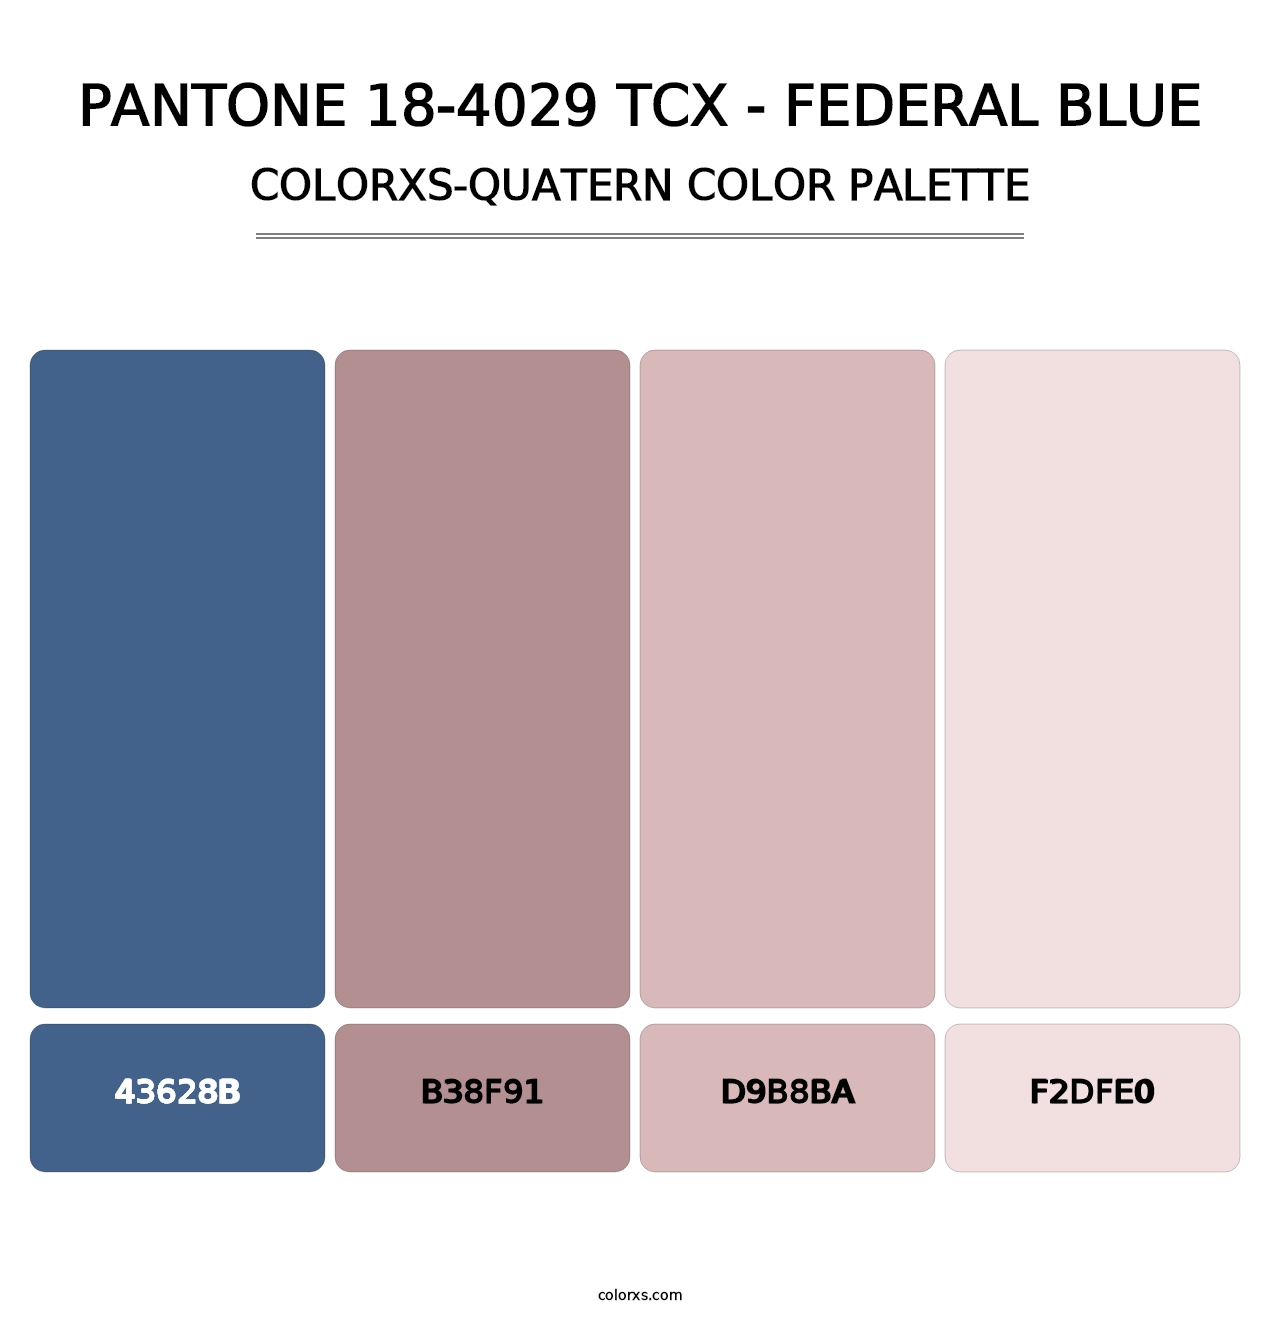 PANTONE 18-4029 TCX - Federal Blue - Colorxs Quatern Palette